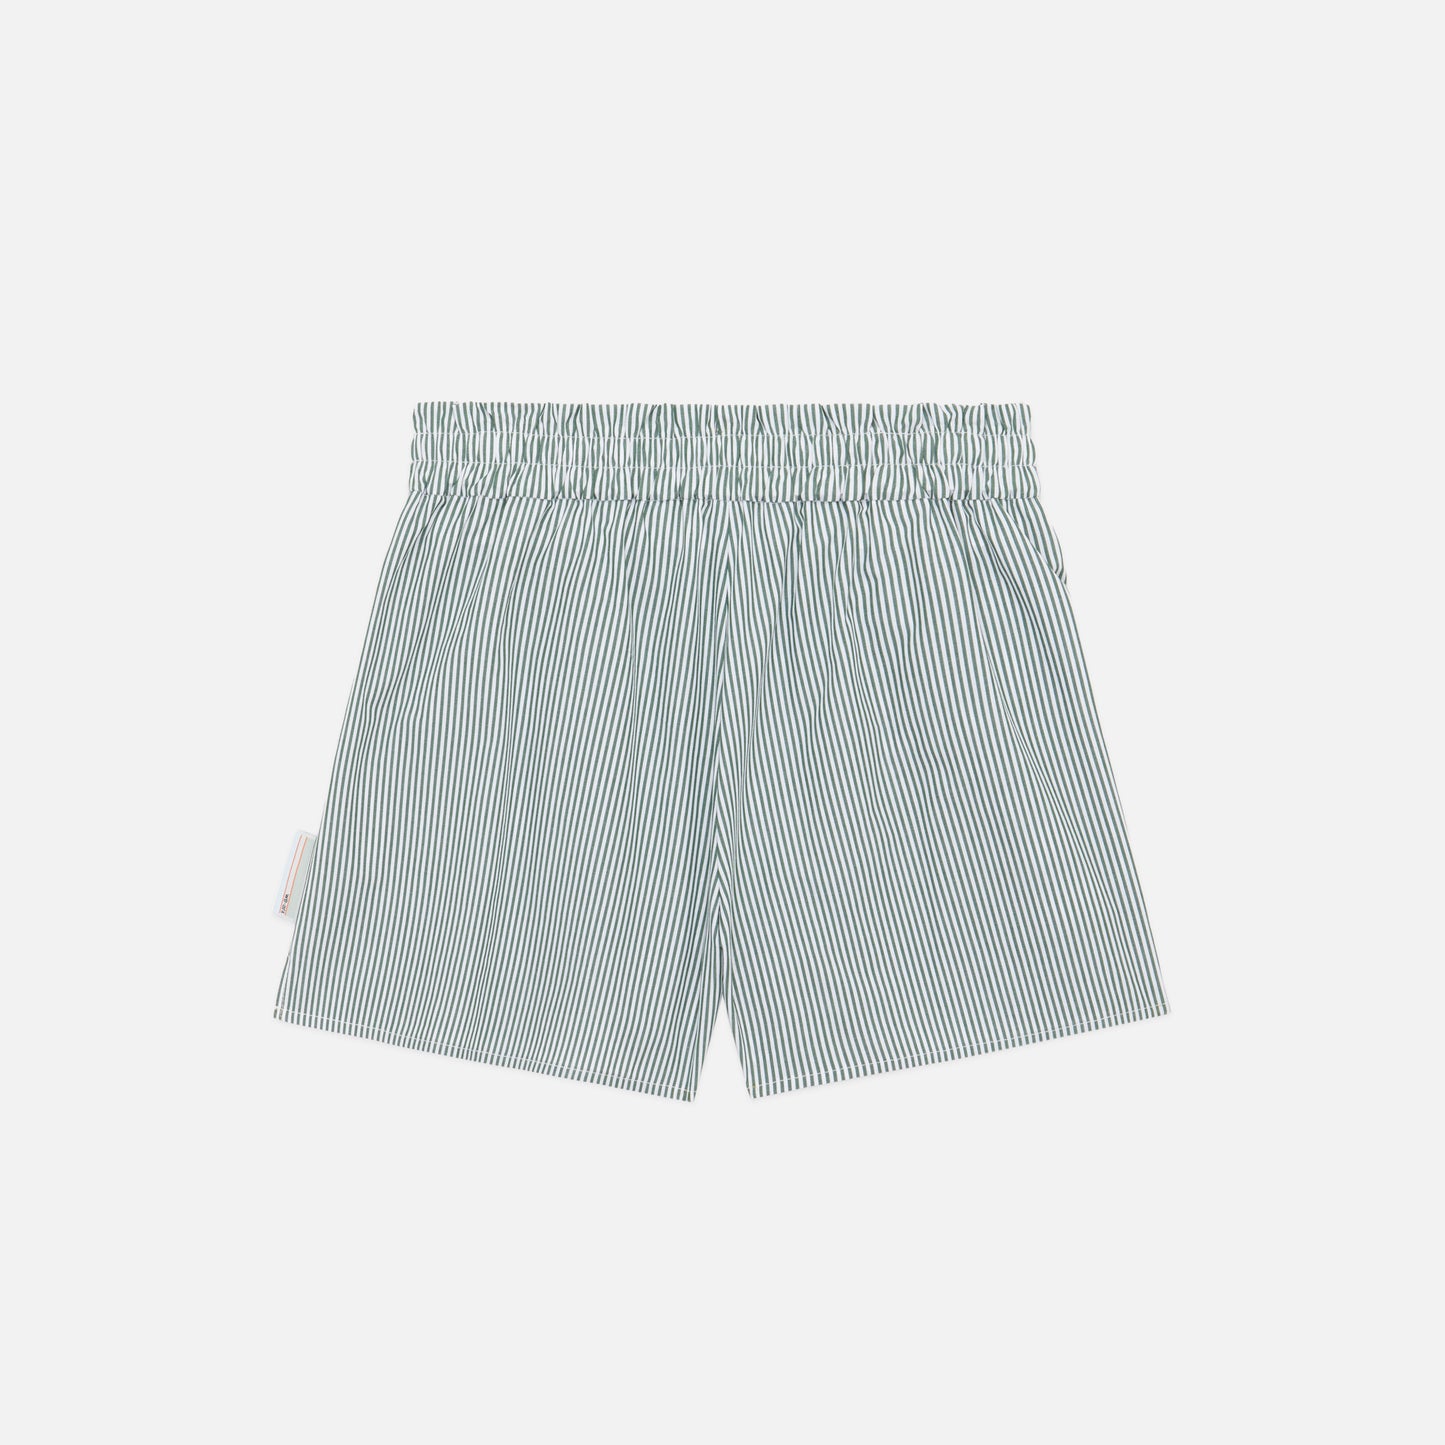 The Amalfi Shorts